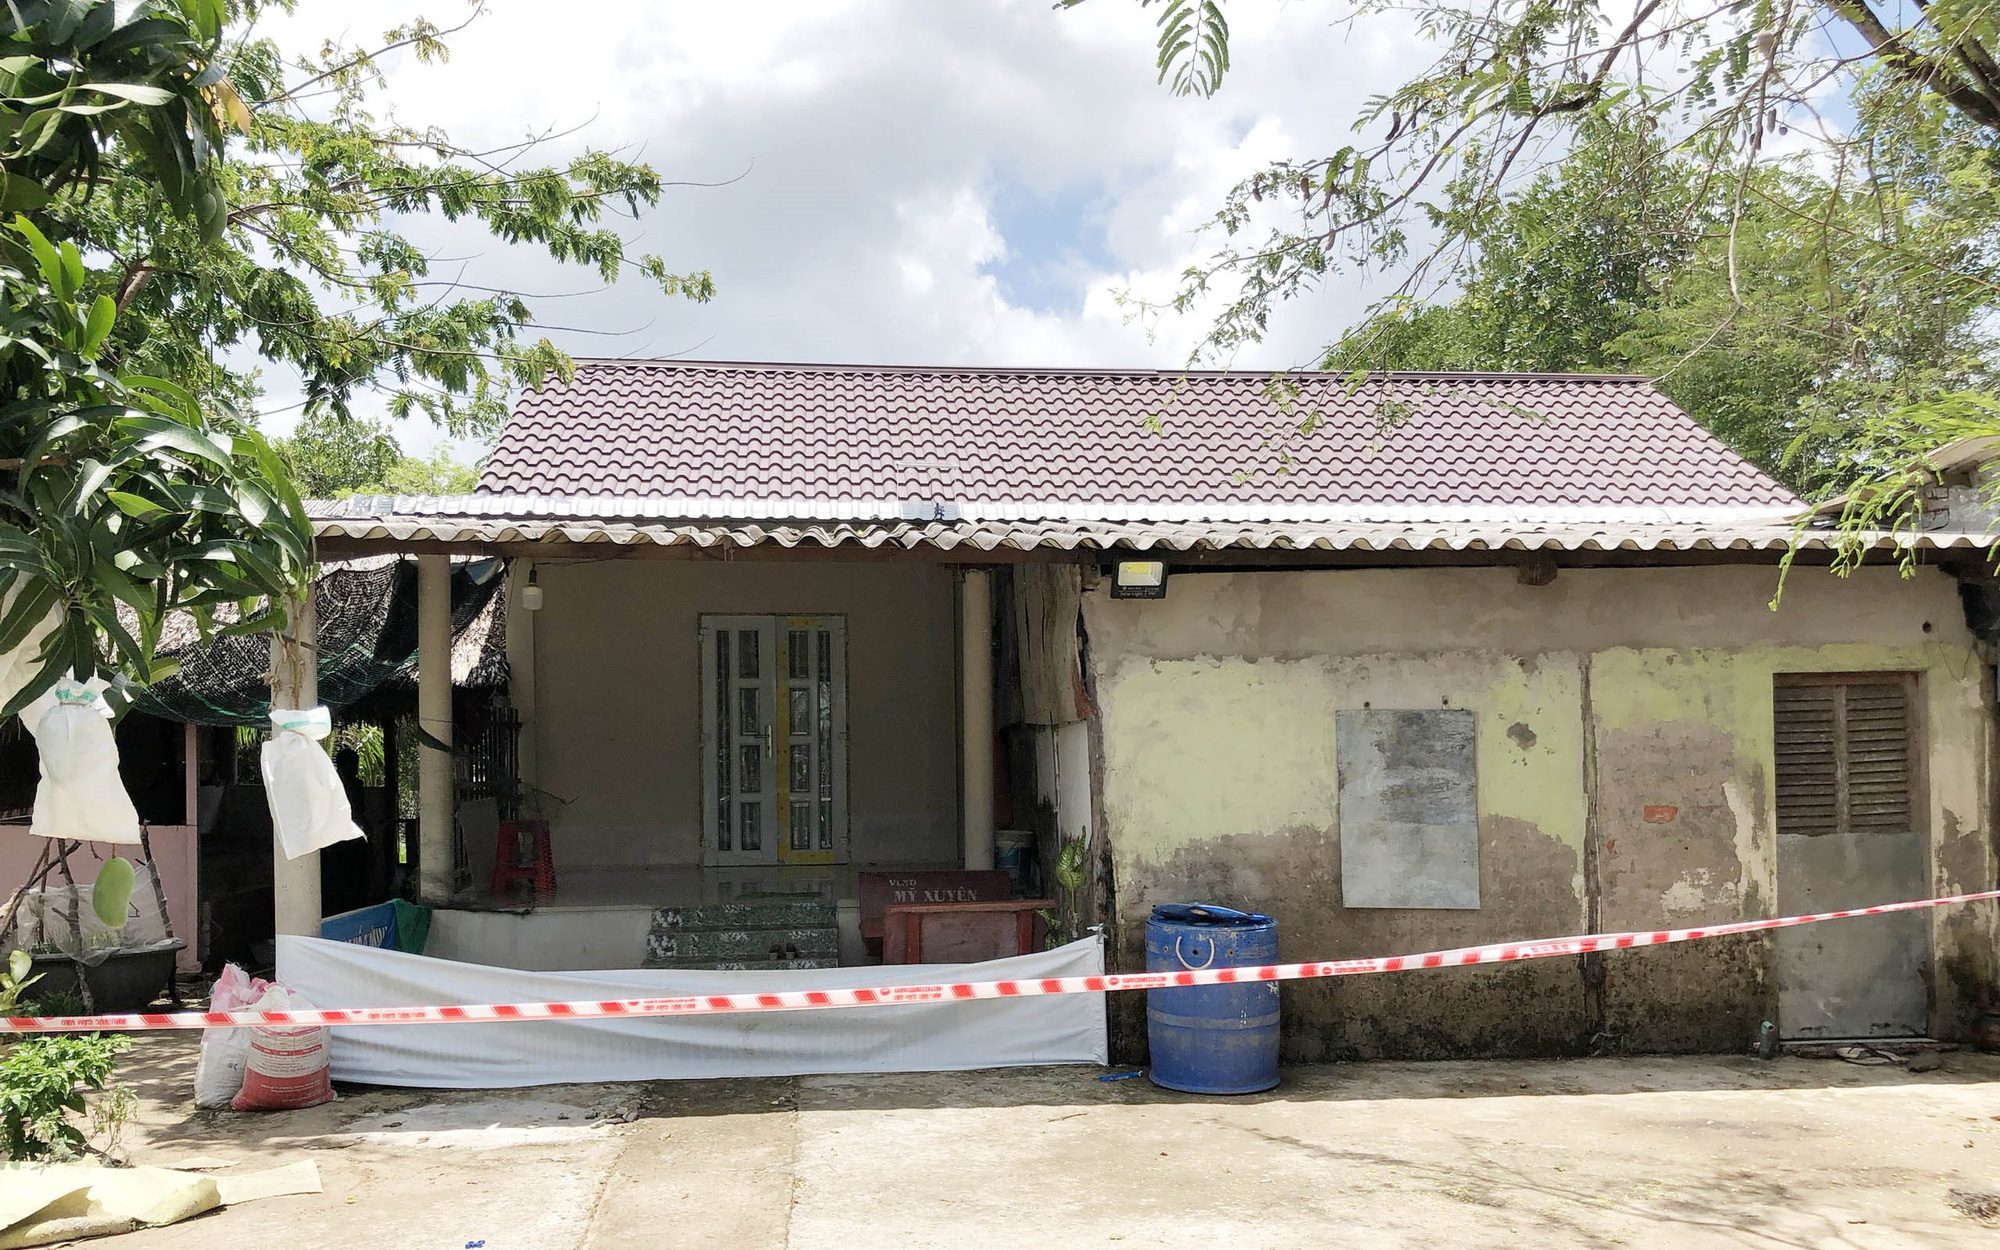 Vụ thảm án 3 người trong gia đình tử vong ở Cà Mau: Nghi can có dấu hiệu tự tử